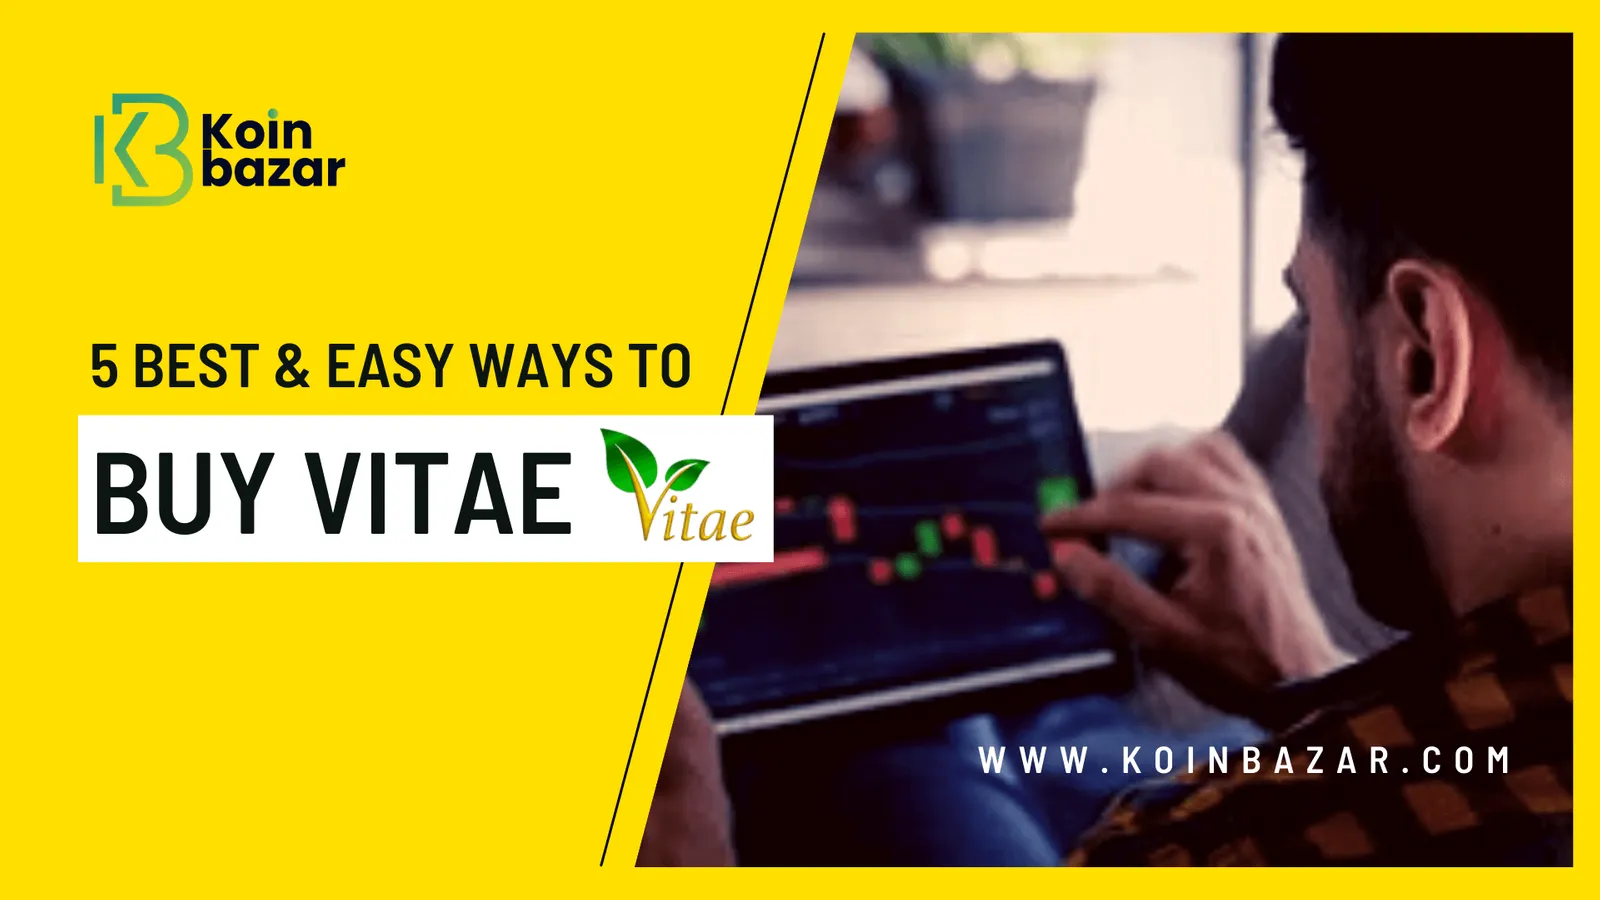 5 Best & Easy Ways To Buy Vitae